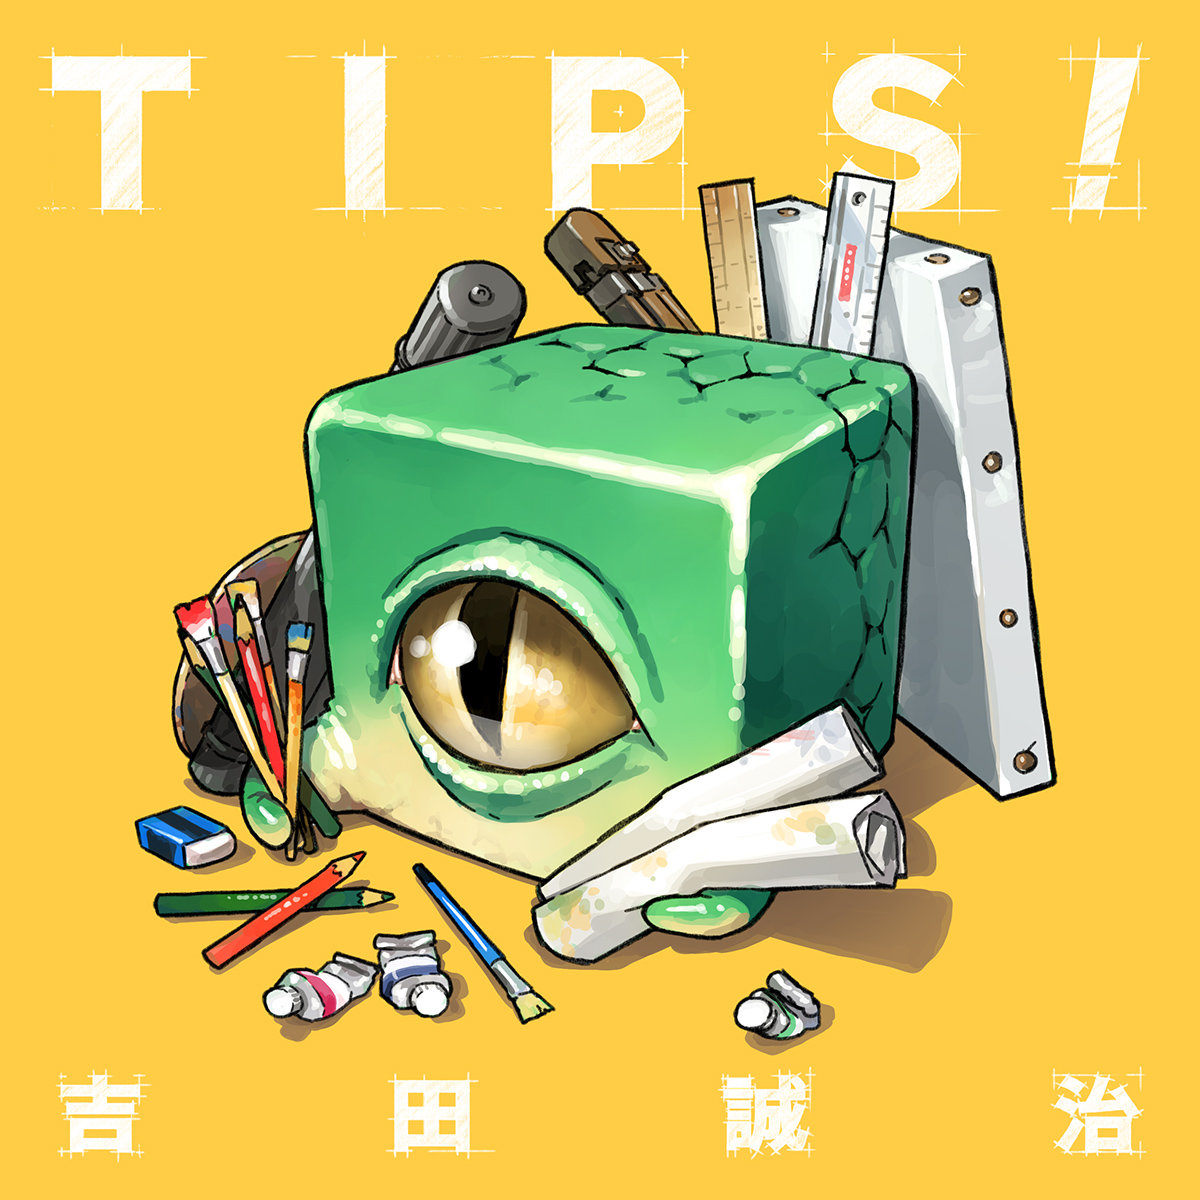 「【既刊紹介】「TIPS!」は過去に公開したTIPSに描き下ろしを加えたものです。」|吉田誠治のイラスト